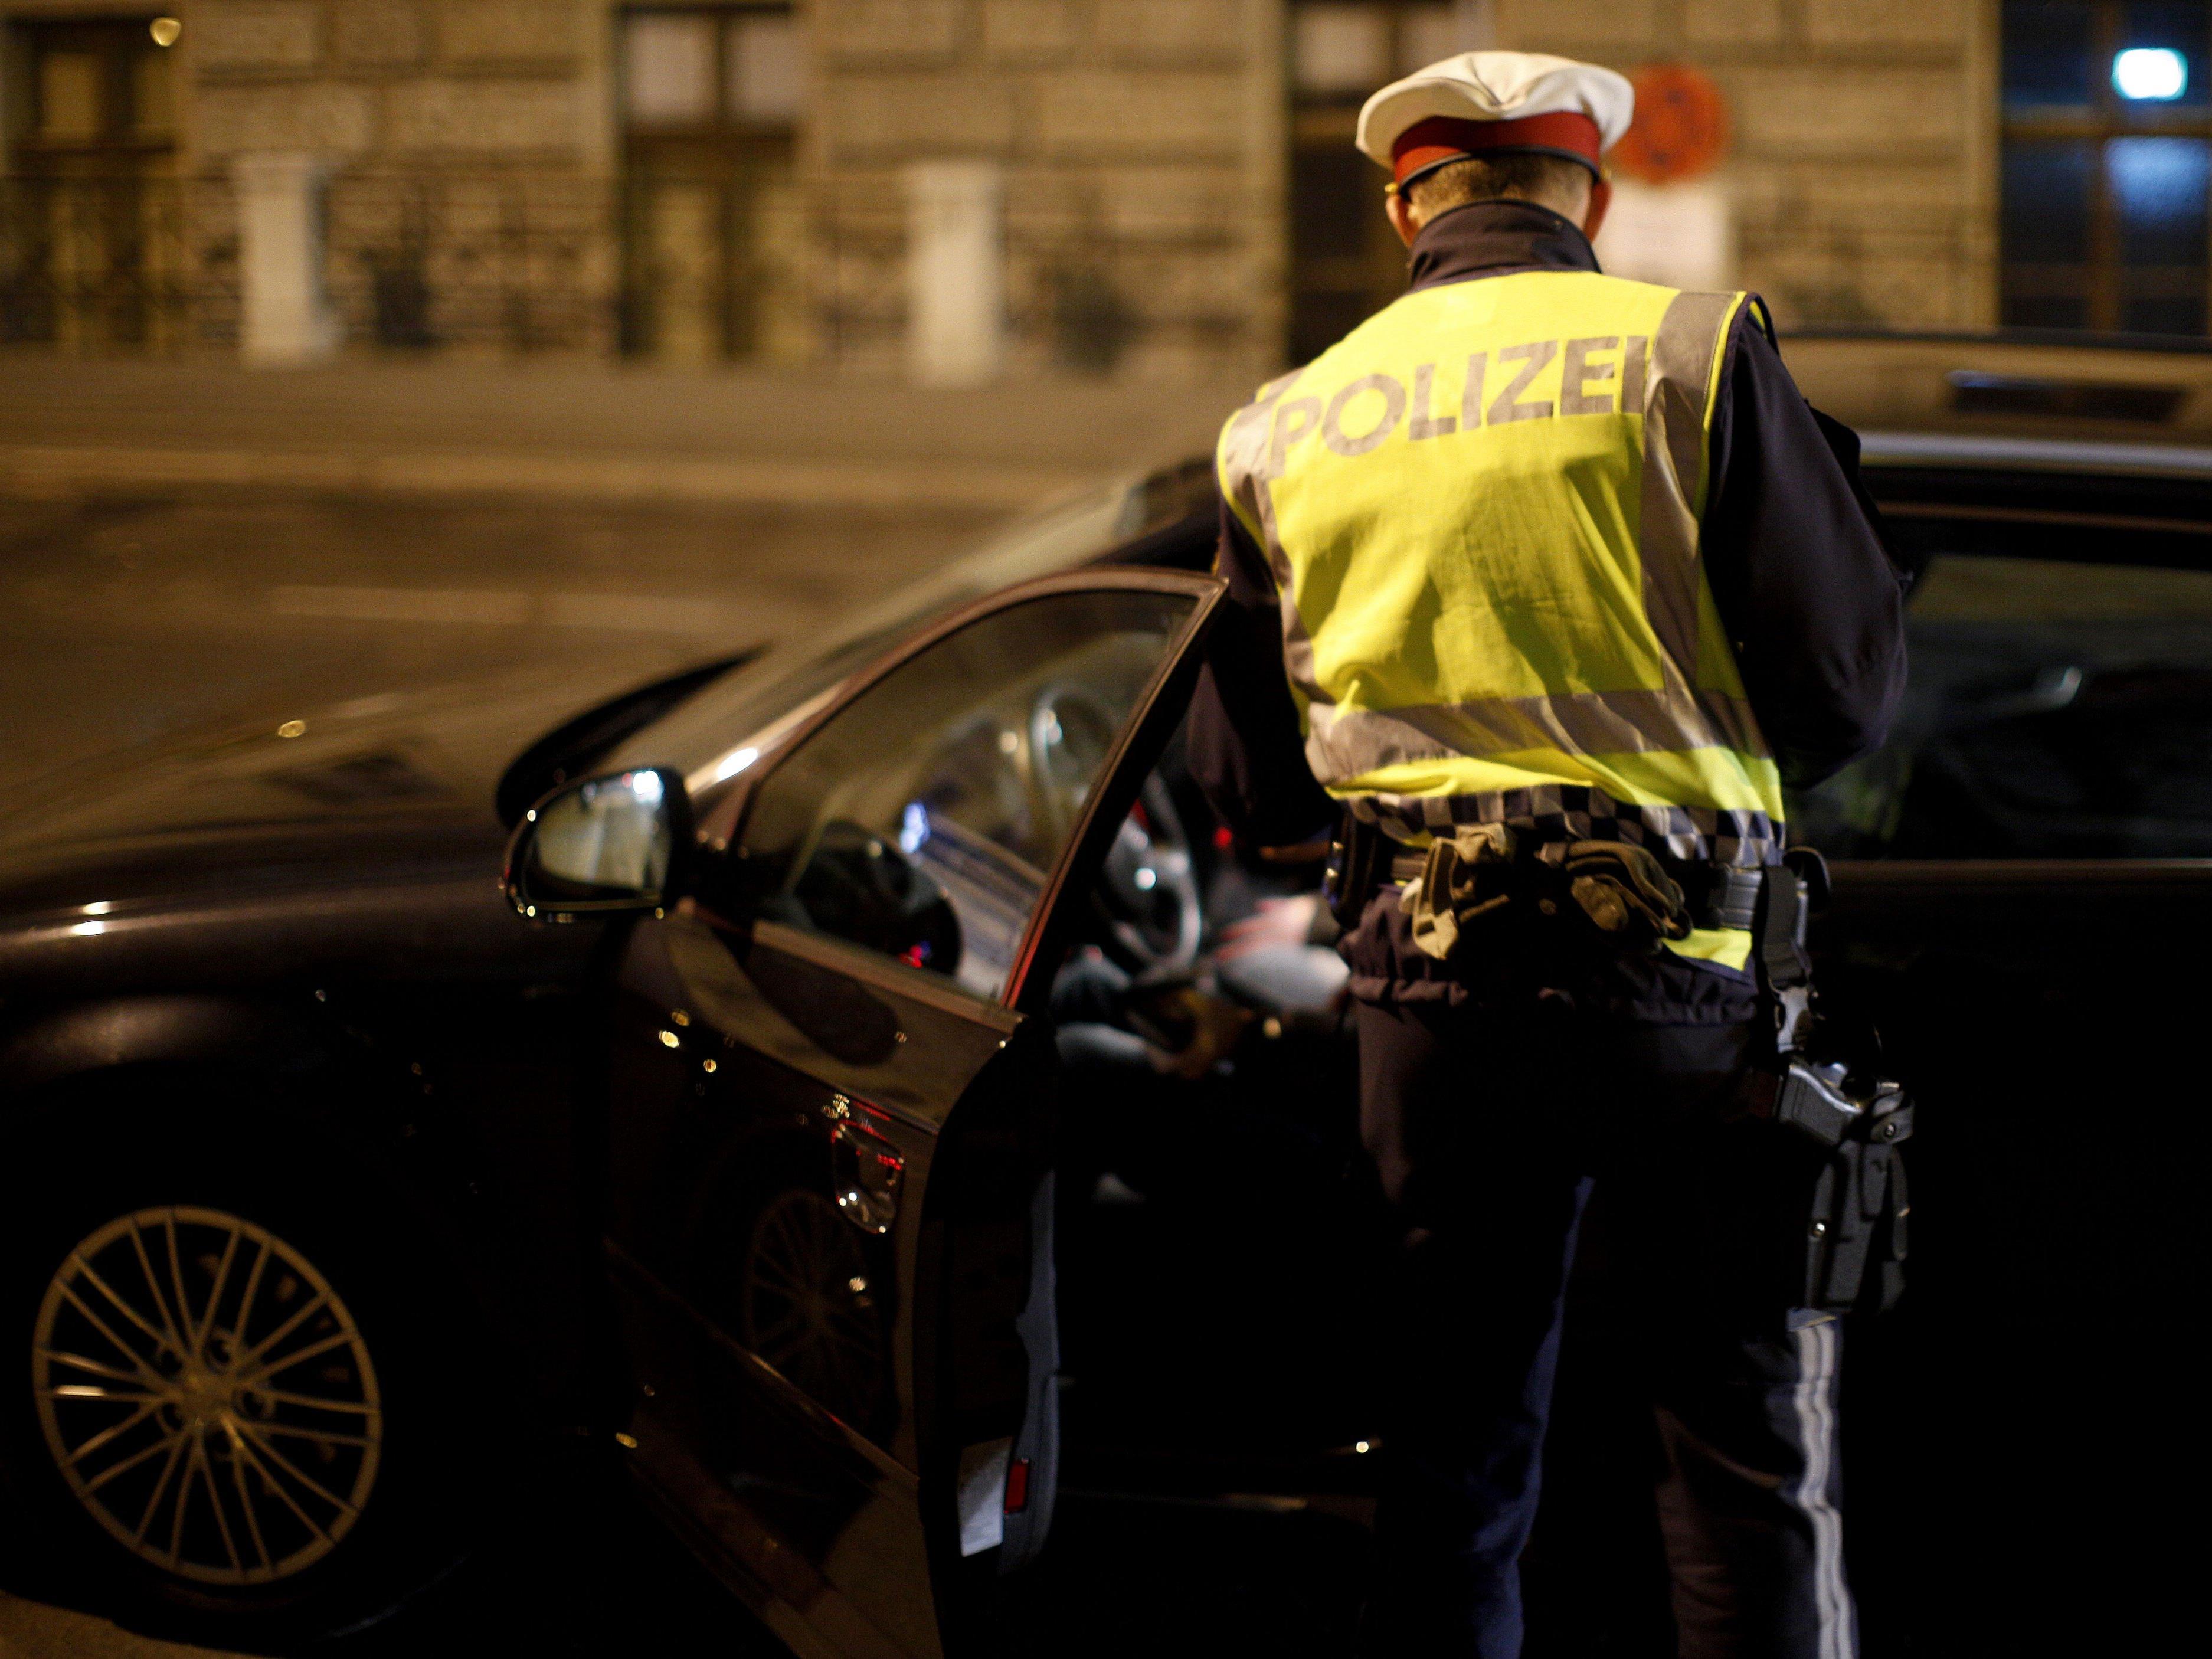 Die junge Frau geriet in Wien-Josefstadt in eine Polizeikontrolle